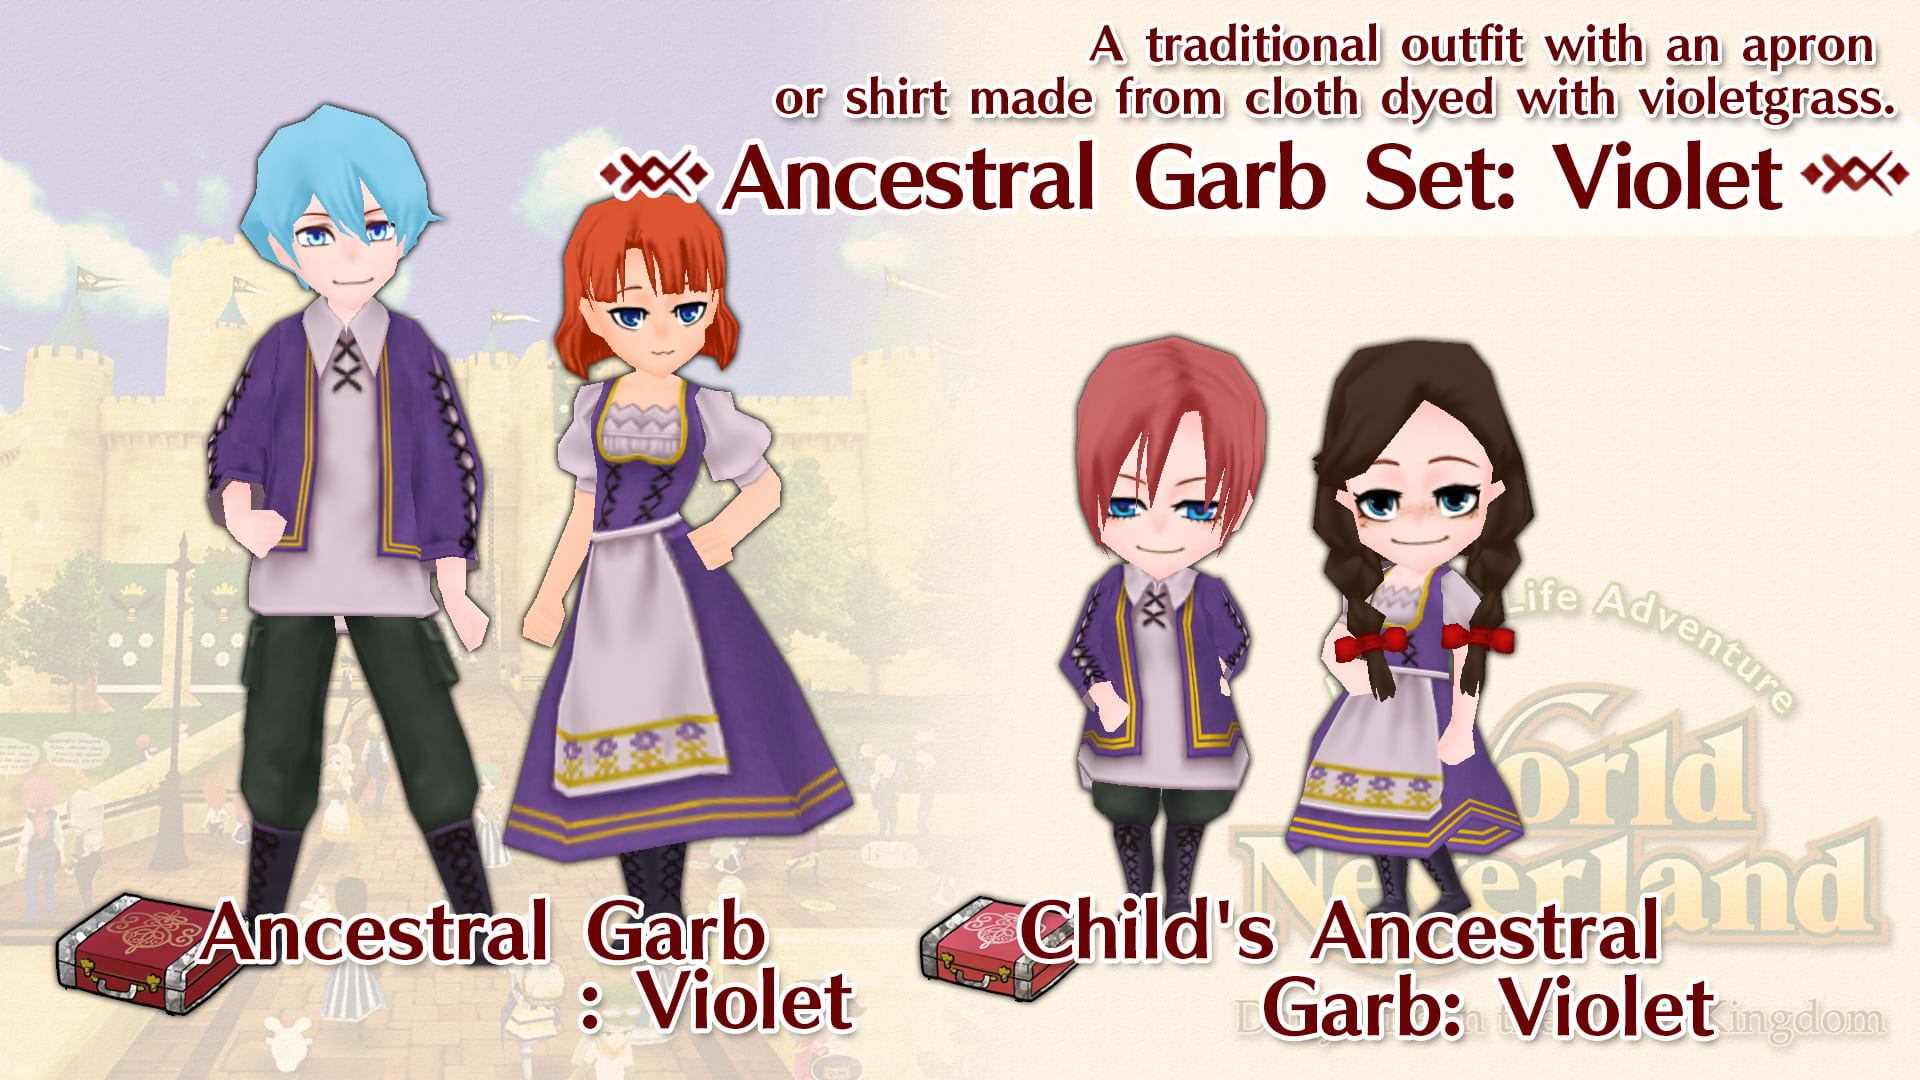 Ancestral Garb Set: Violet